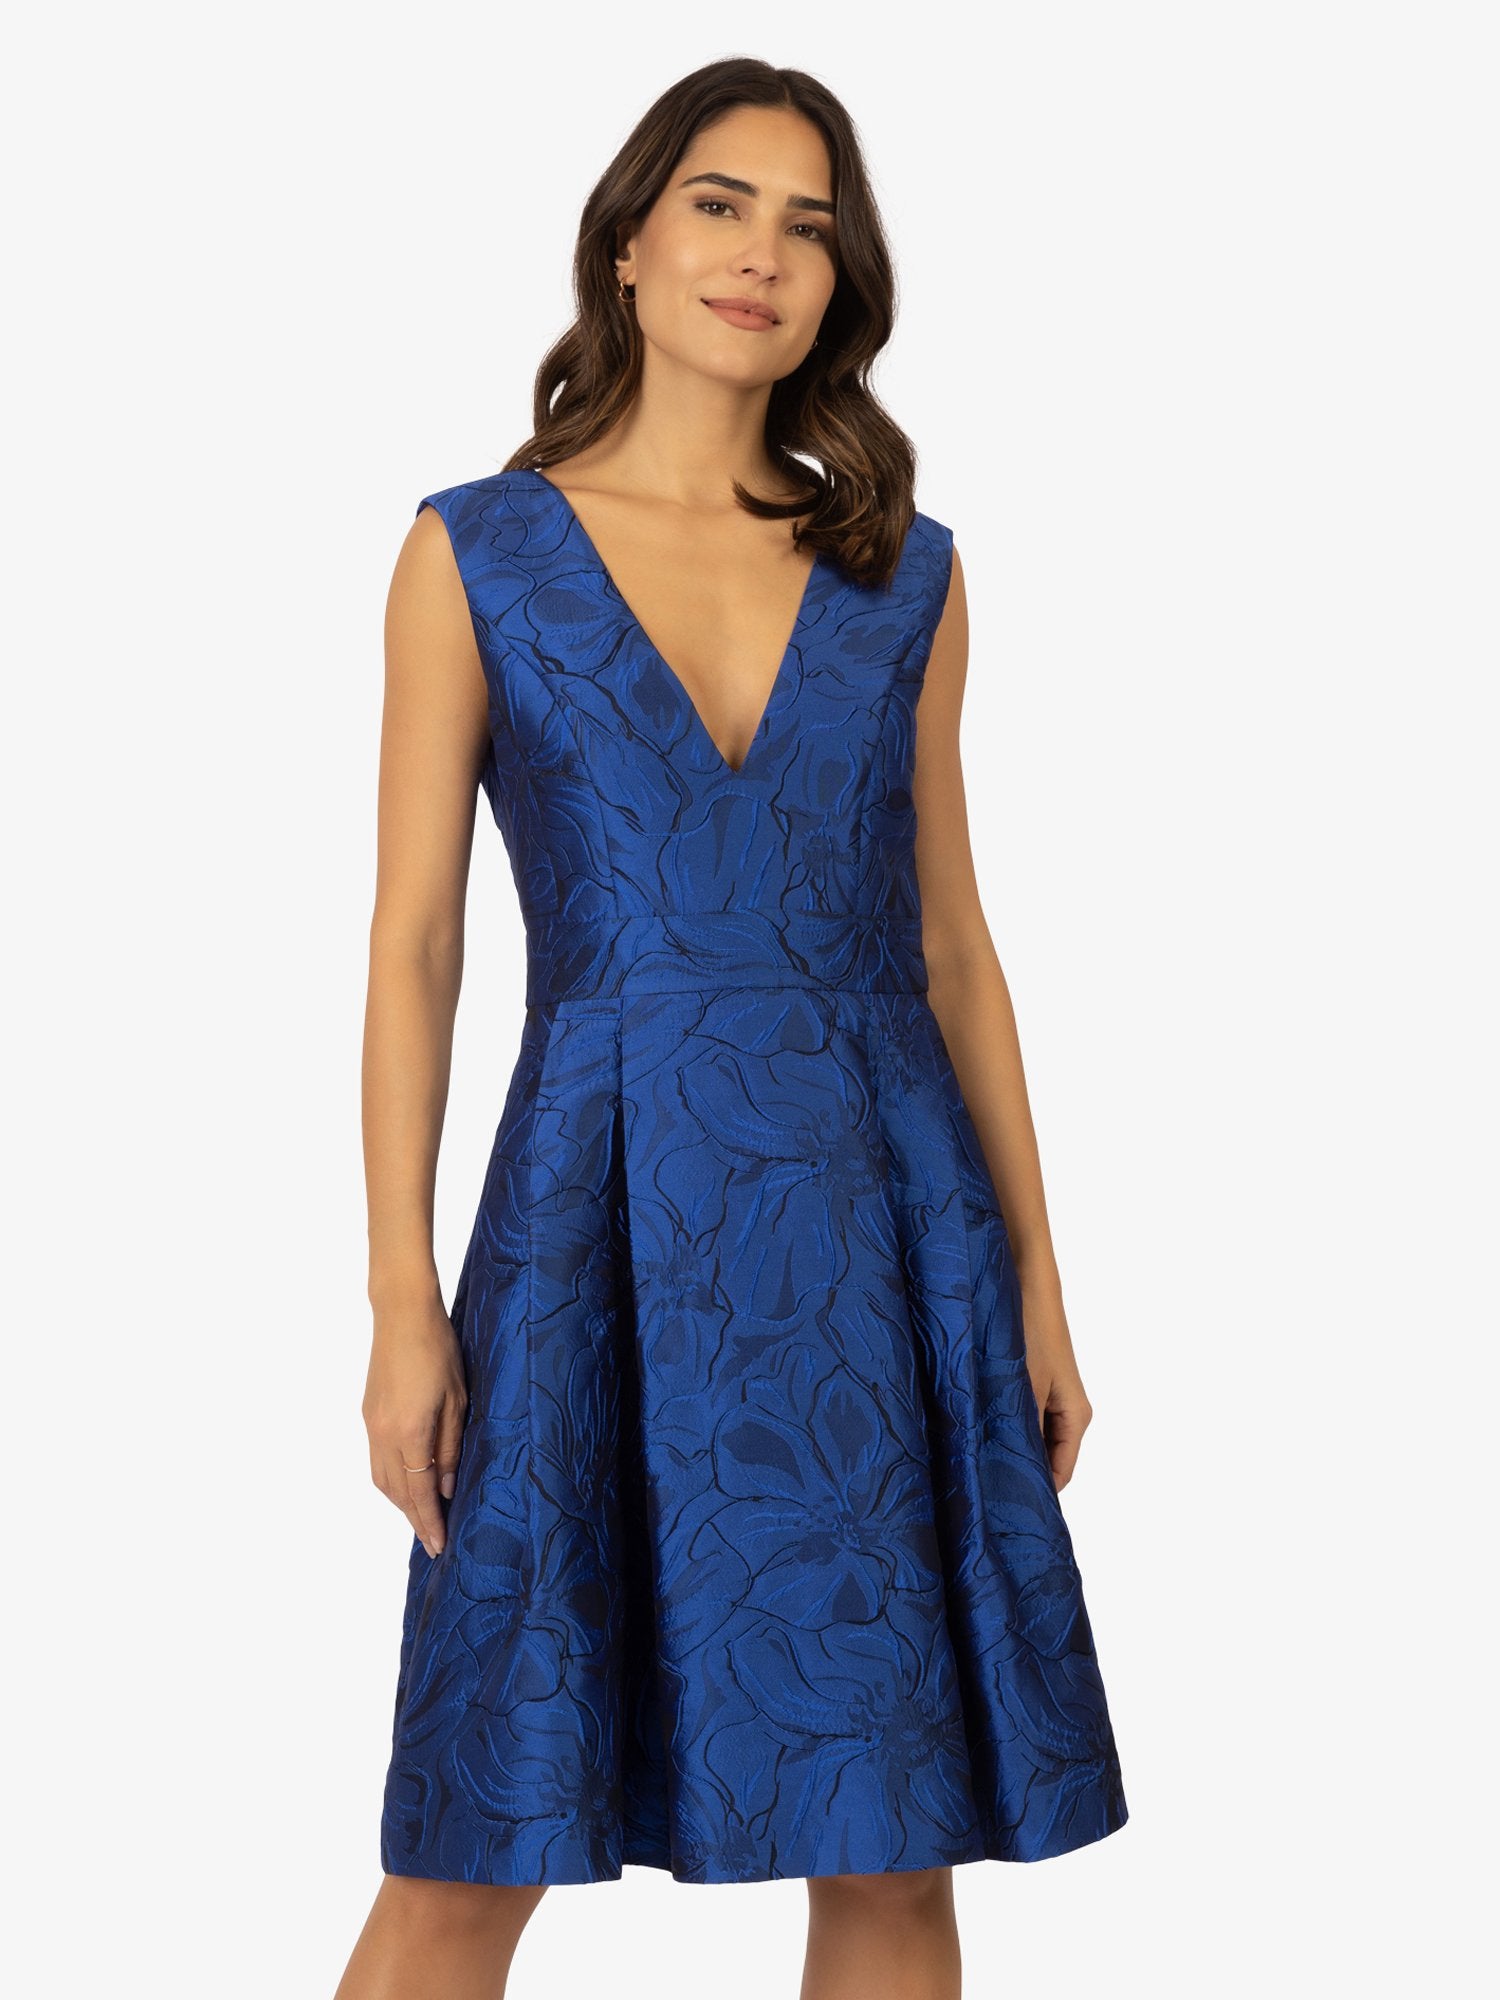 APART Jacquard Kleid mit eingelegten Falten | royalblau